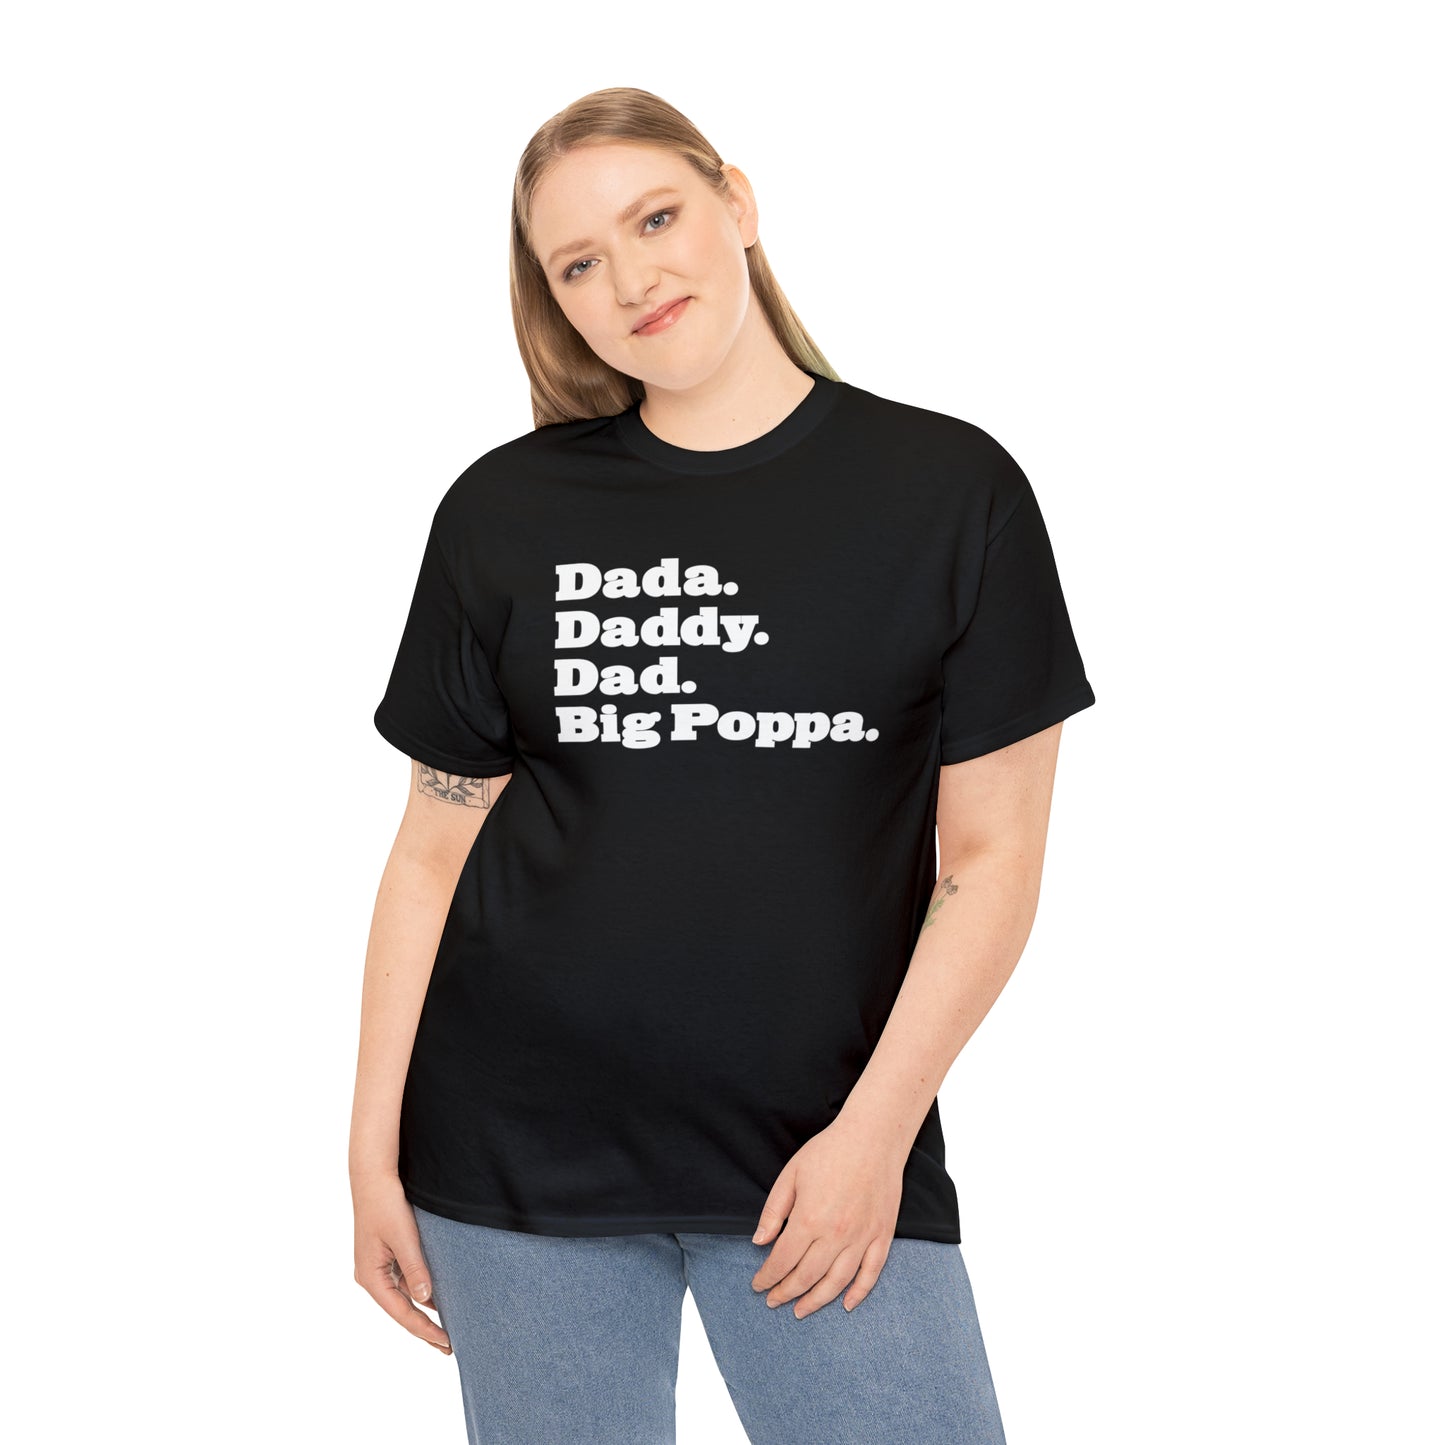 Dada Daddy Dad Big Poppa Shirt Great Father's Day Gift for Dada Daddy Dad Big Poppa T-Shirt for Dad